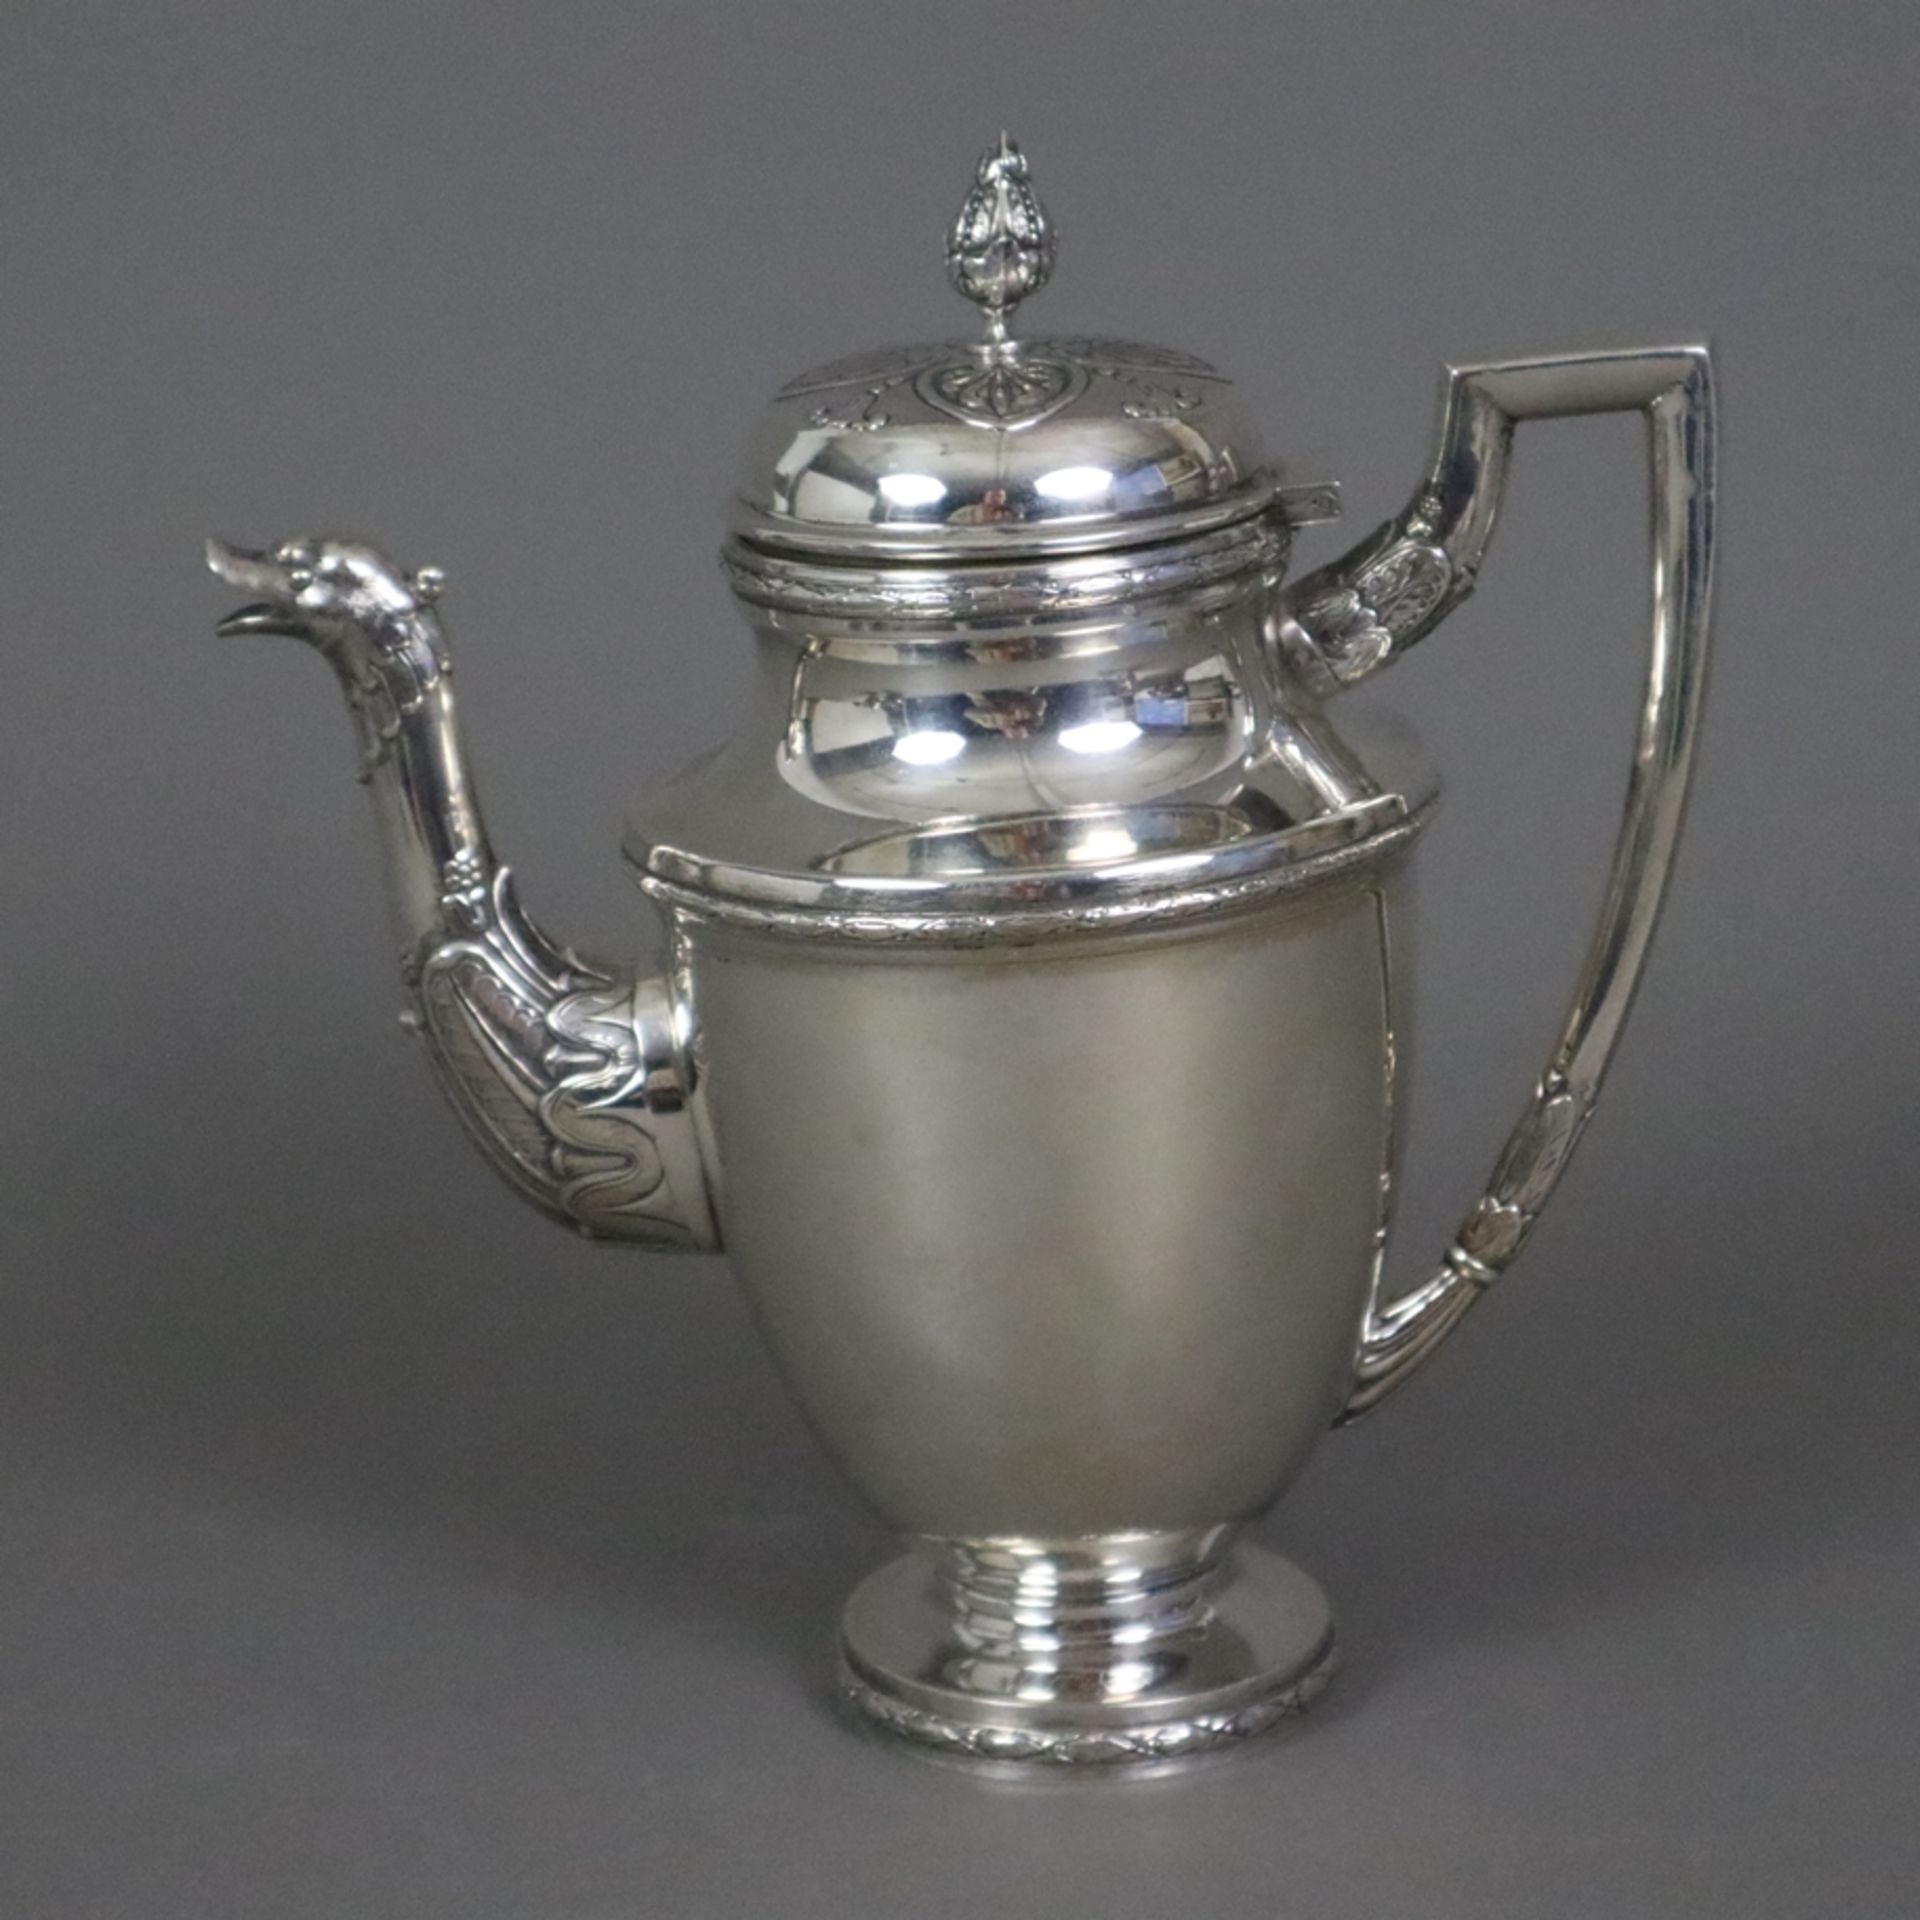 Kaffee-/Teekern - 915er Silber, Oriol, Spanien, nach 1934, Empire-Form mit Reliefdekor, geometrisch - Bild 2 aus 11